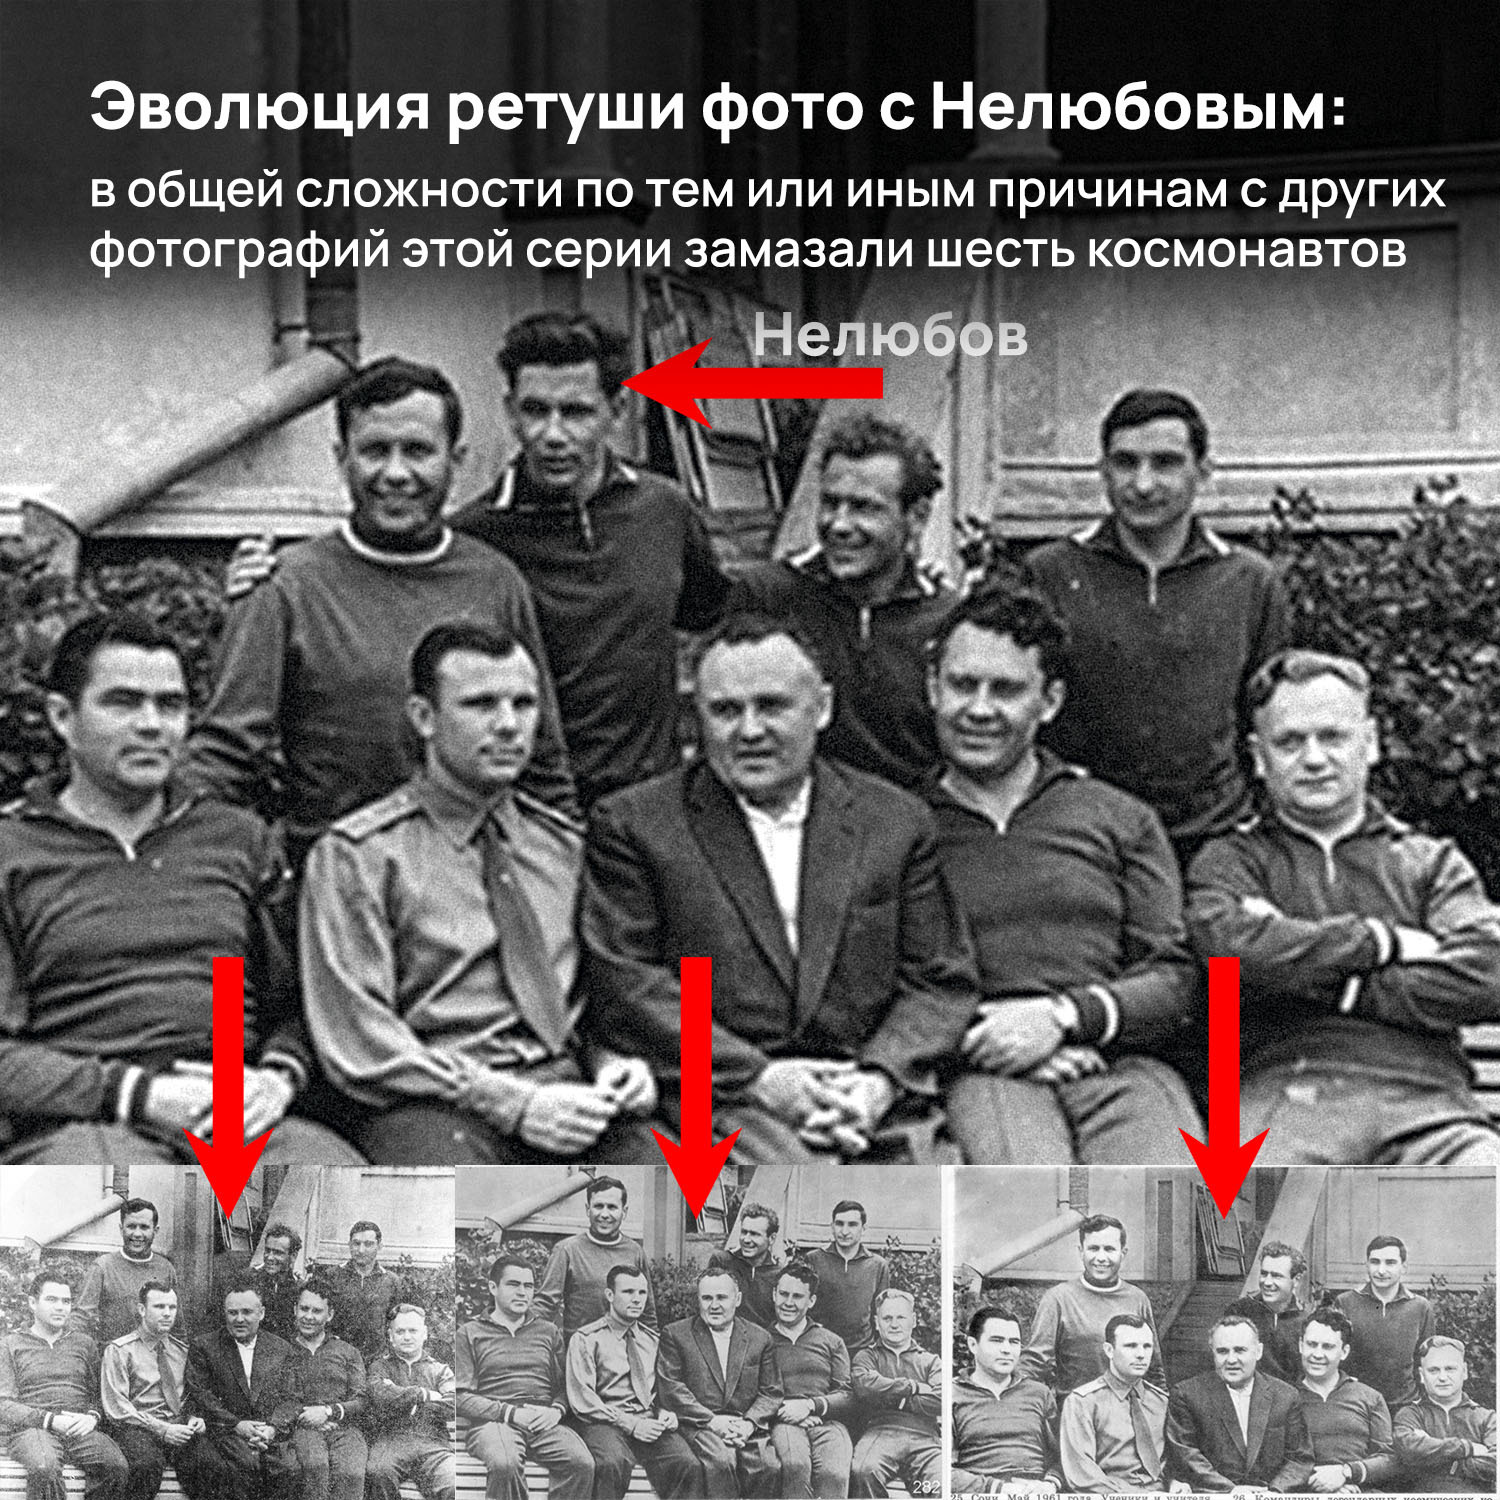 Почему первым космонавтом выбрали именно Гагарина, а не Титова